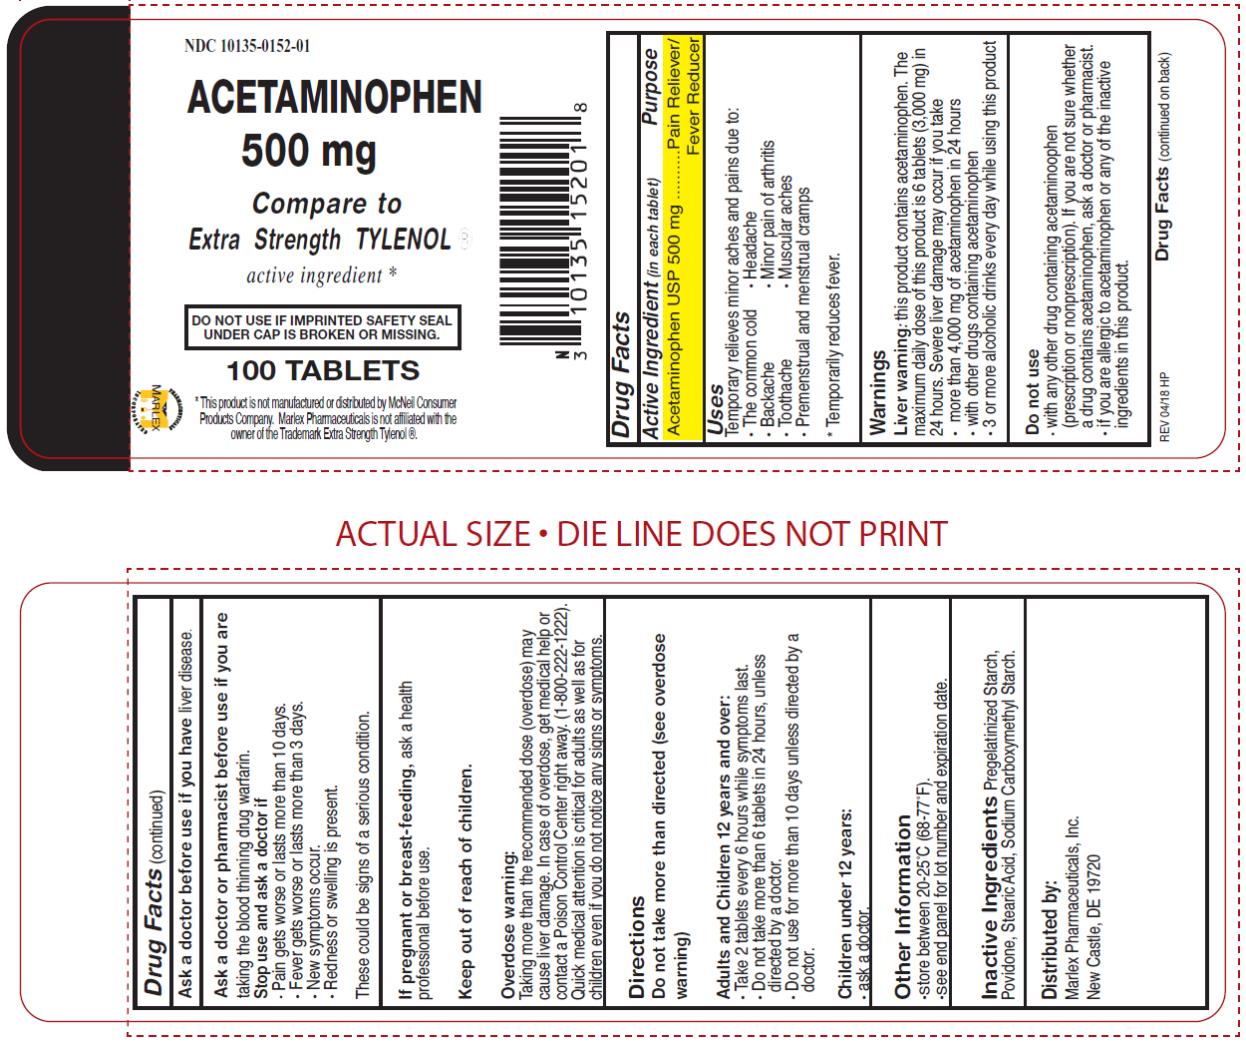 acetaminophen label